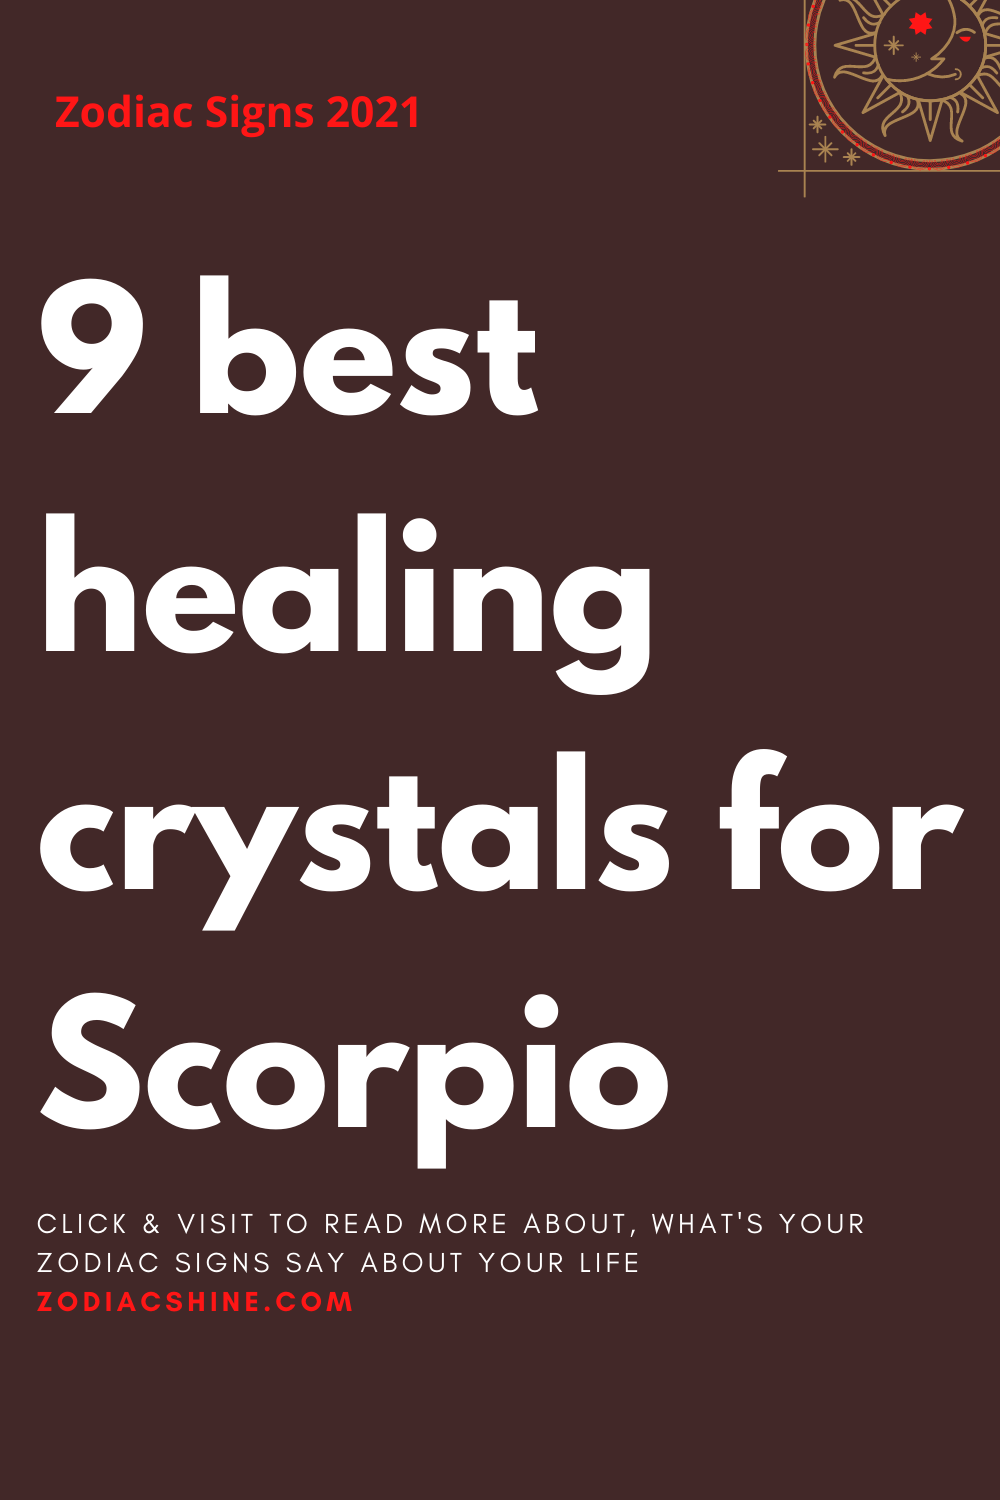 9 best healing crystals for Scorpio